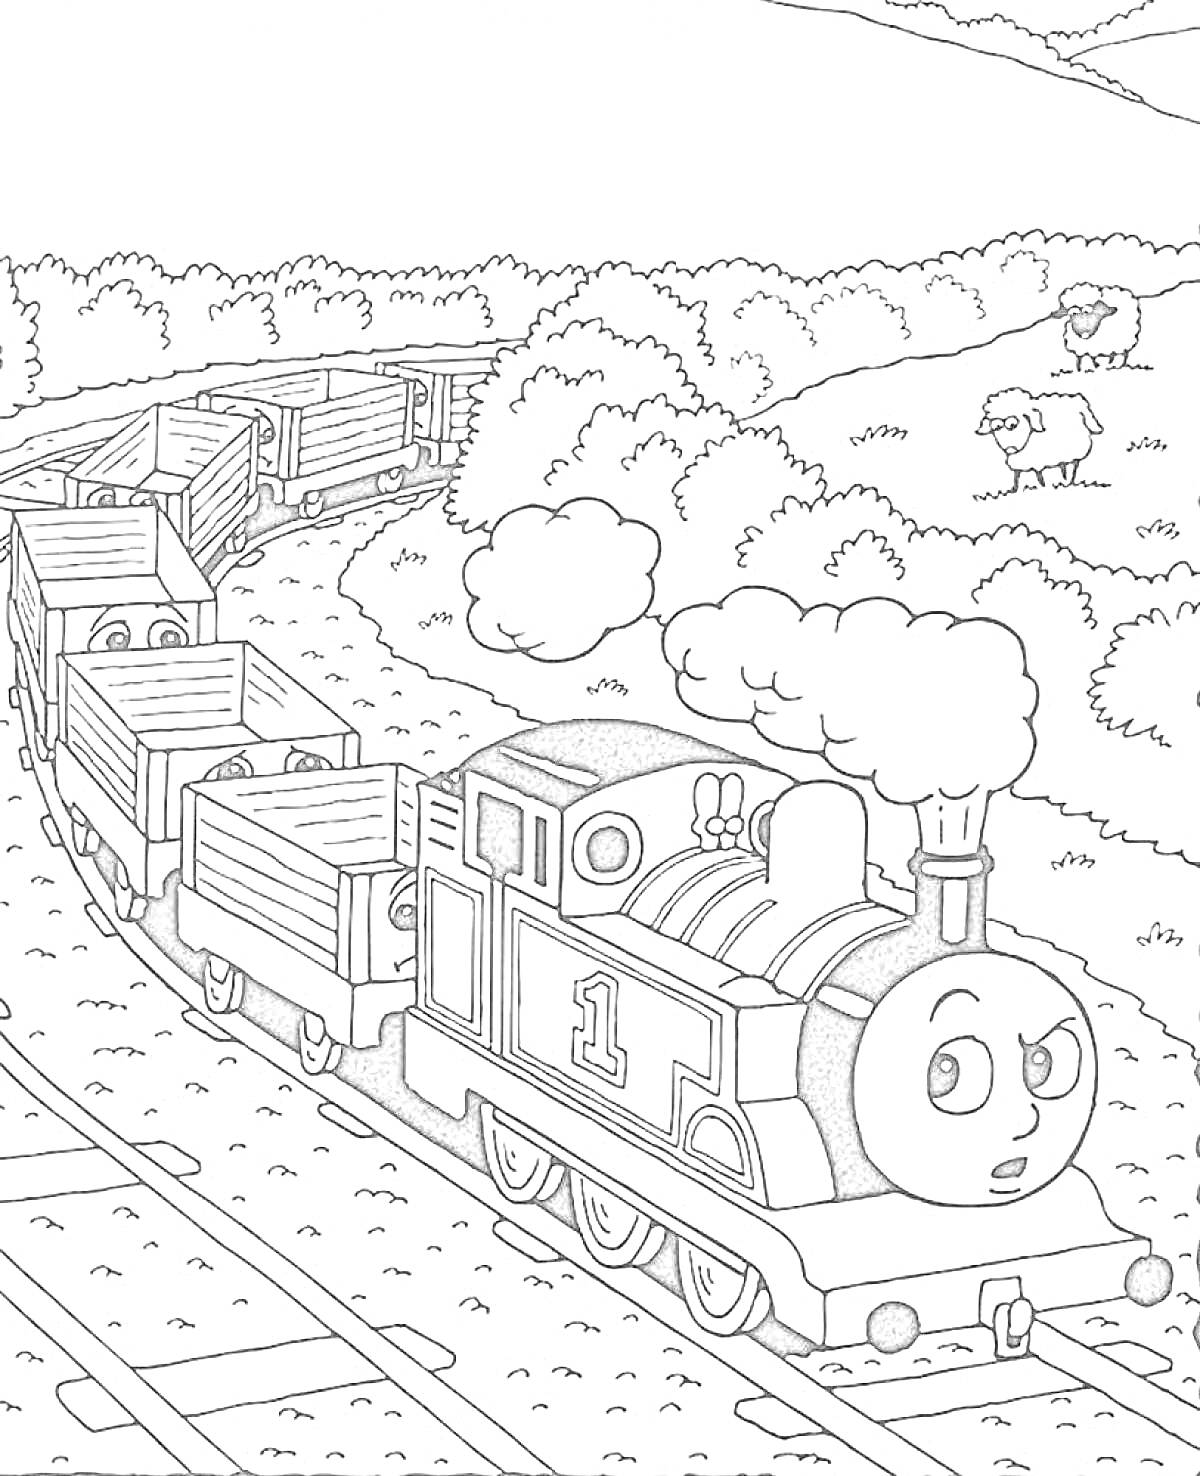 Паровозик Томас с вагонами на железнодорожных путях, с овцой на заднем плане